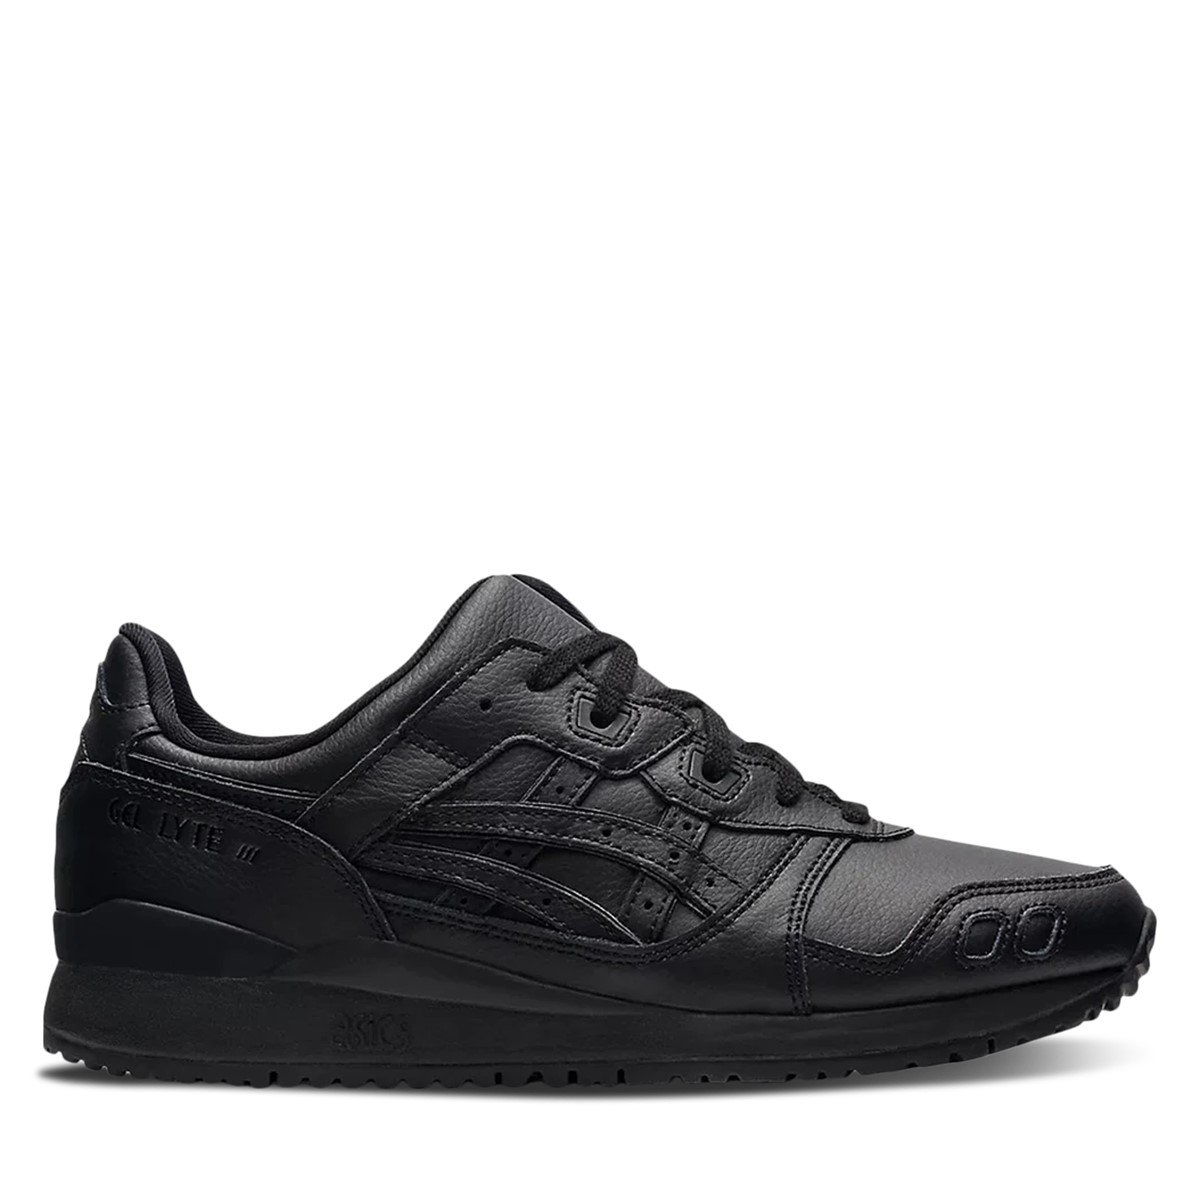 Men's GEL-LYTE III OG Sneakers in Black